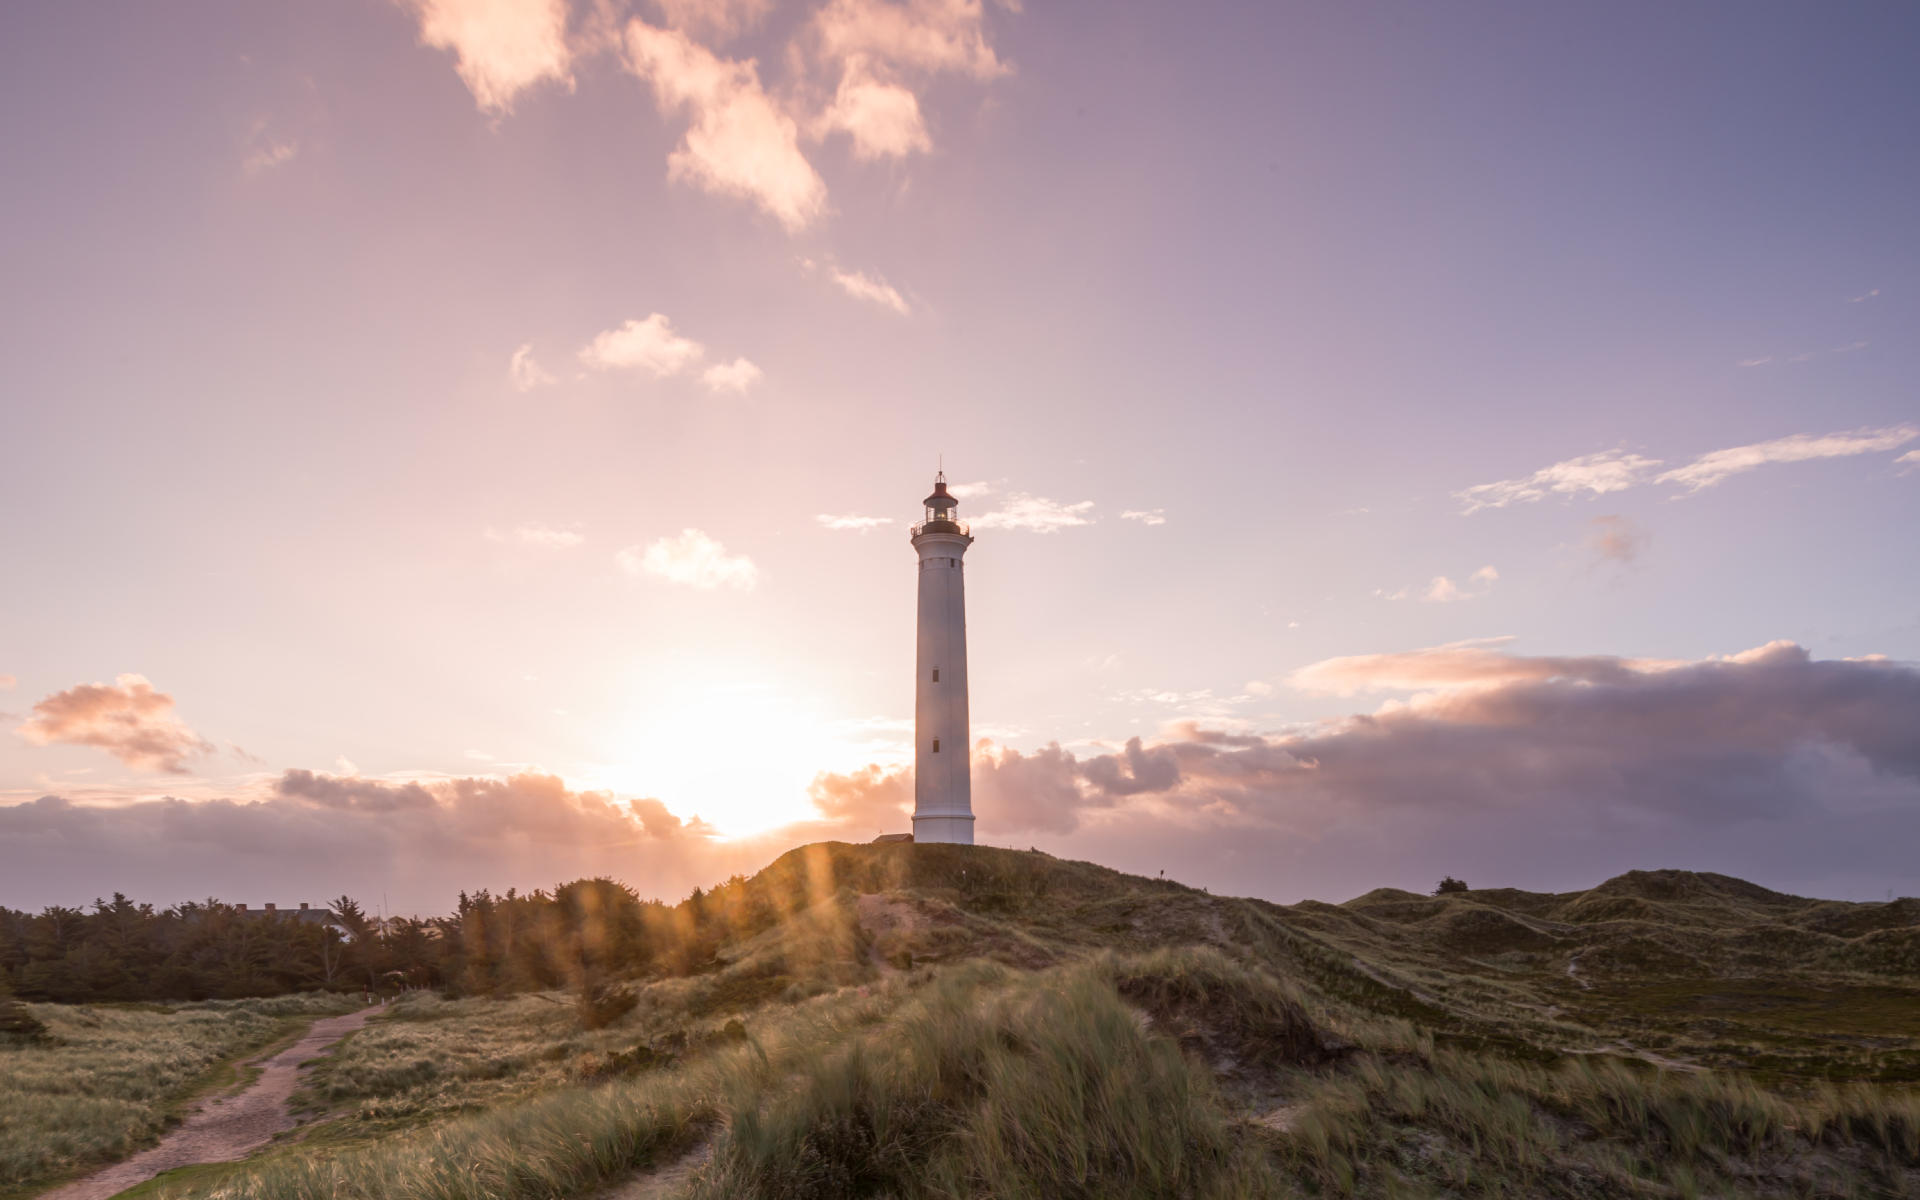 Eine wunderschöne Sehenswürdigkeit in Dänemarks Natur: Der Leuchtturm Lyngvig Fyr, besonders vor dem lila Himmel bei Sonnenuntergang.